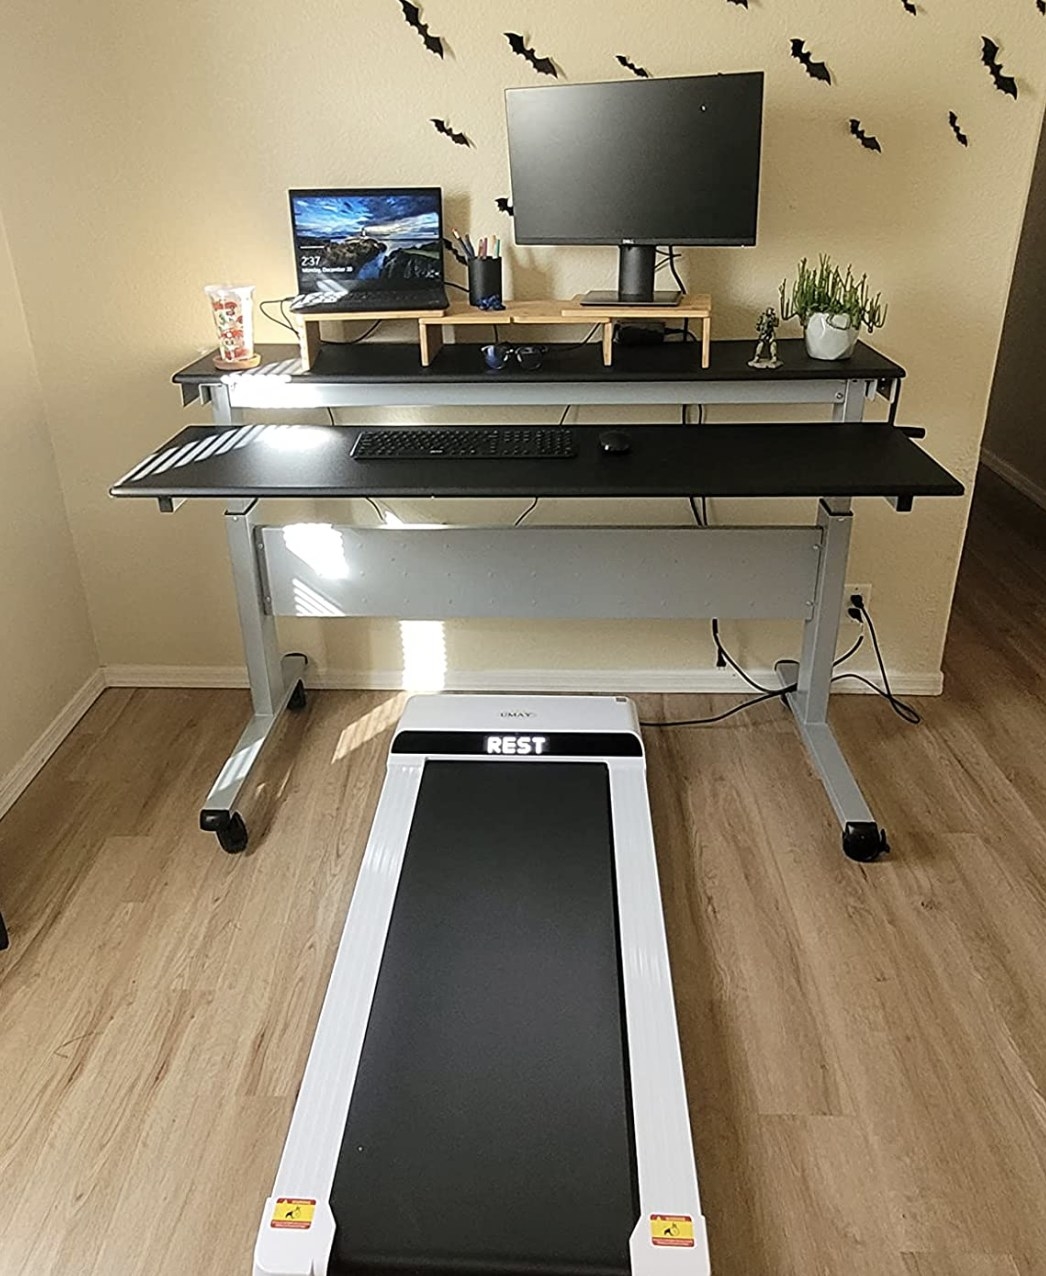 the treadmill